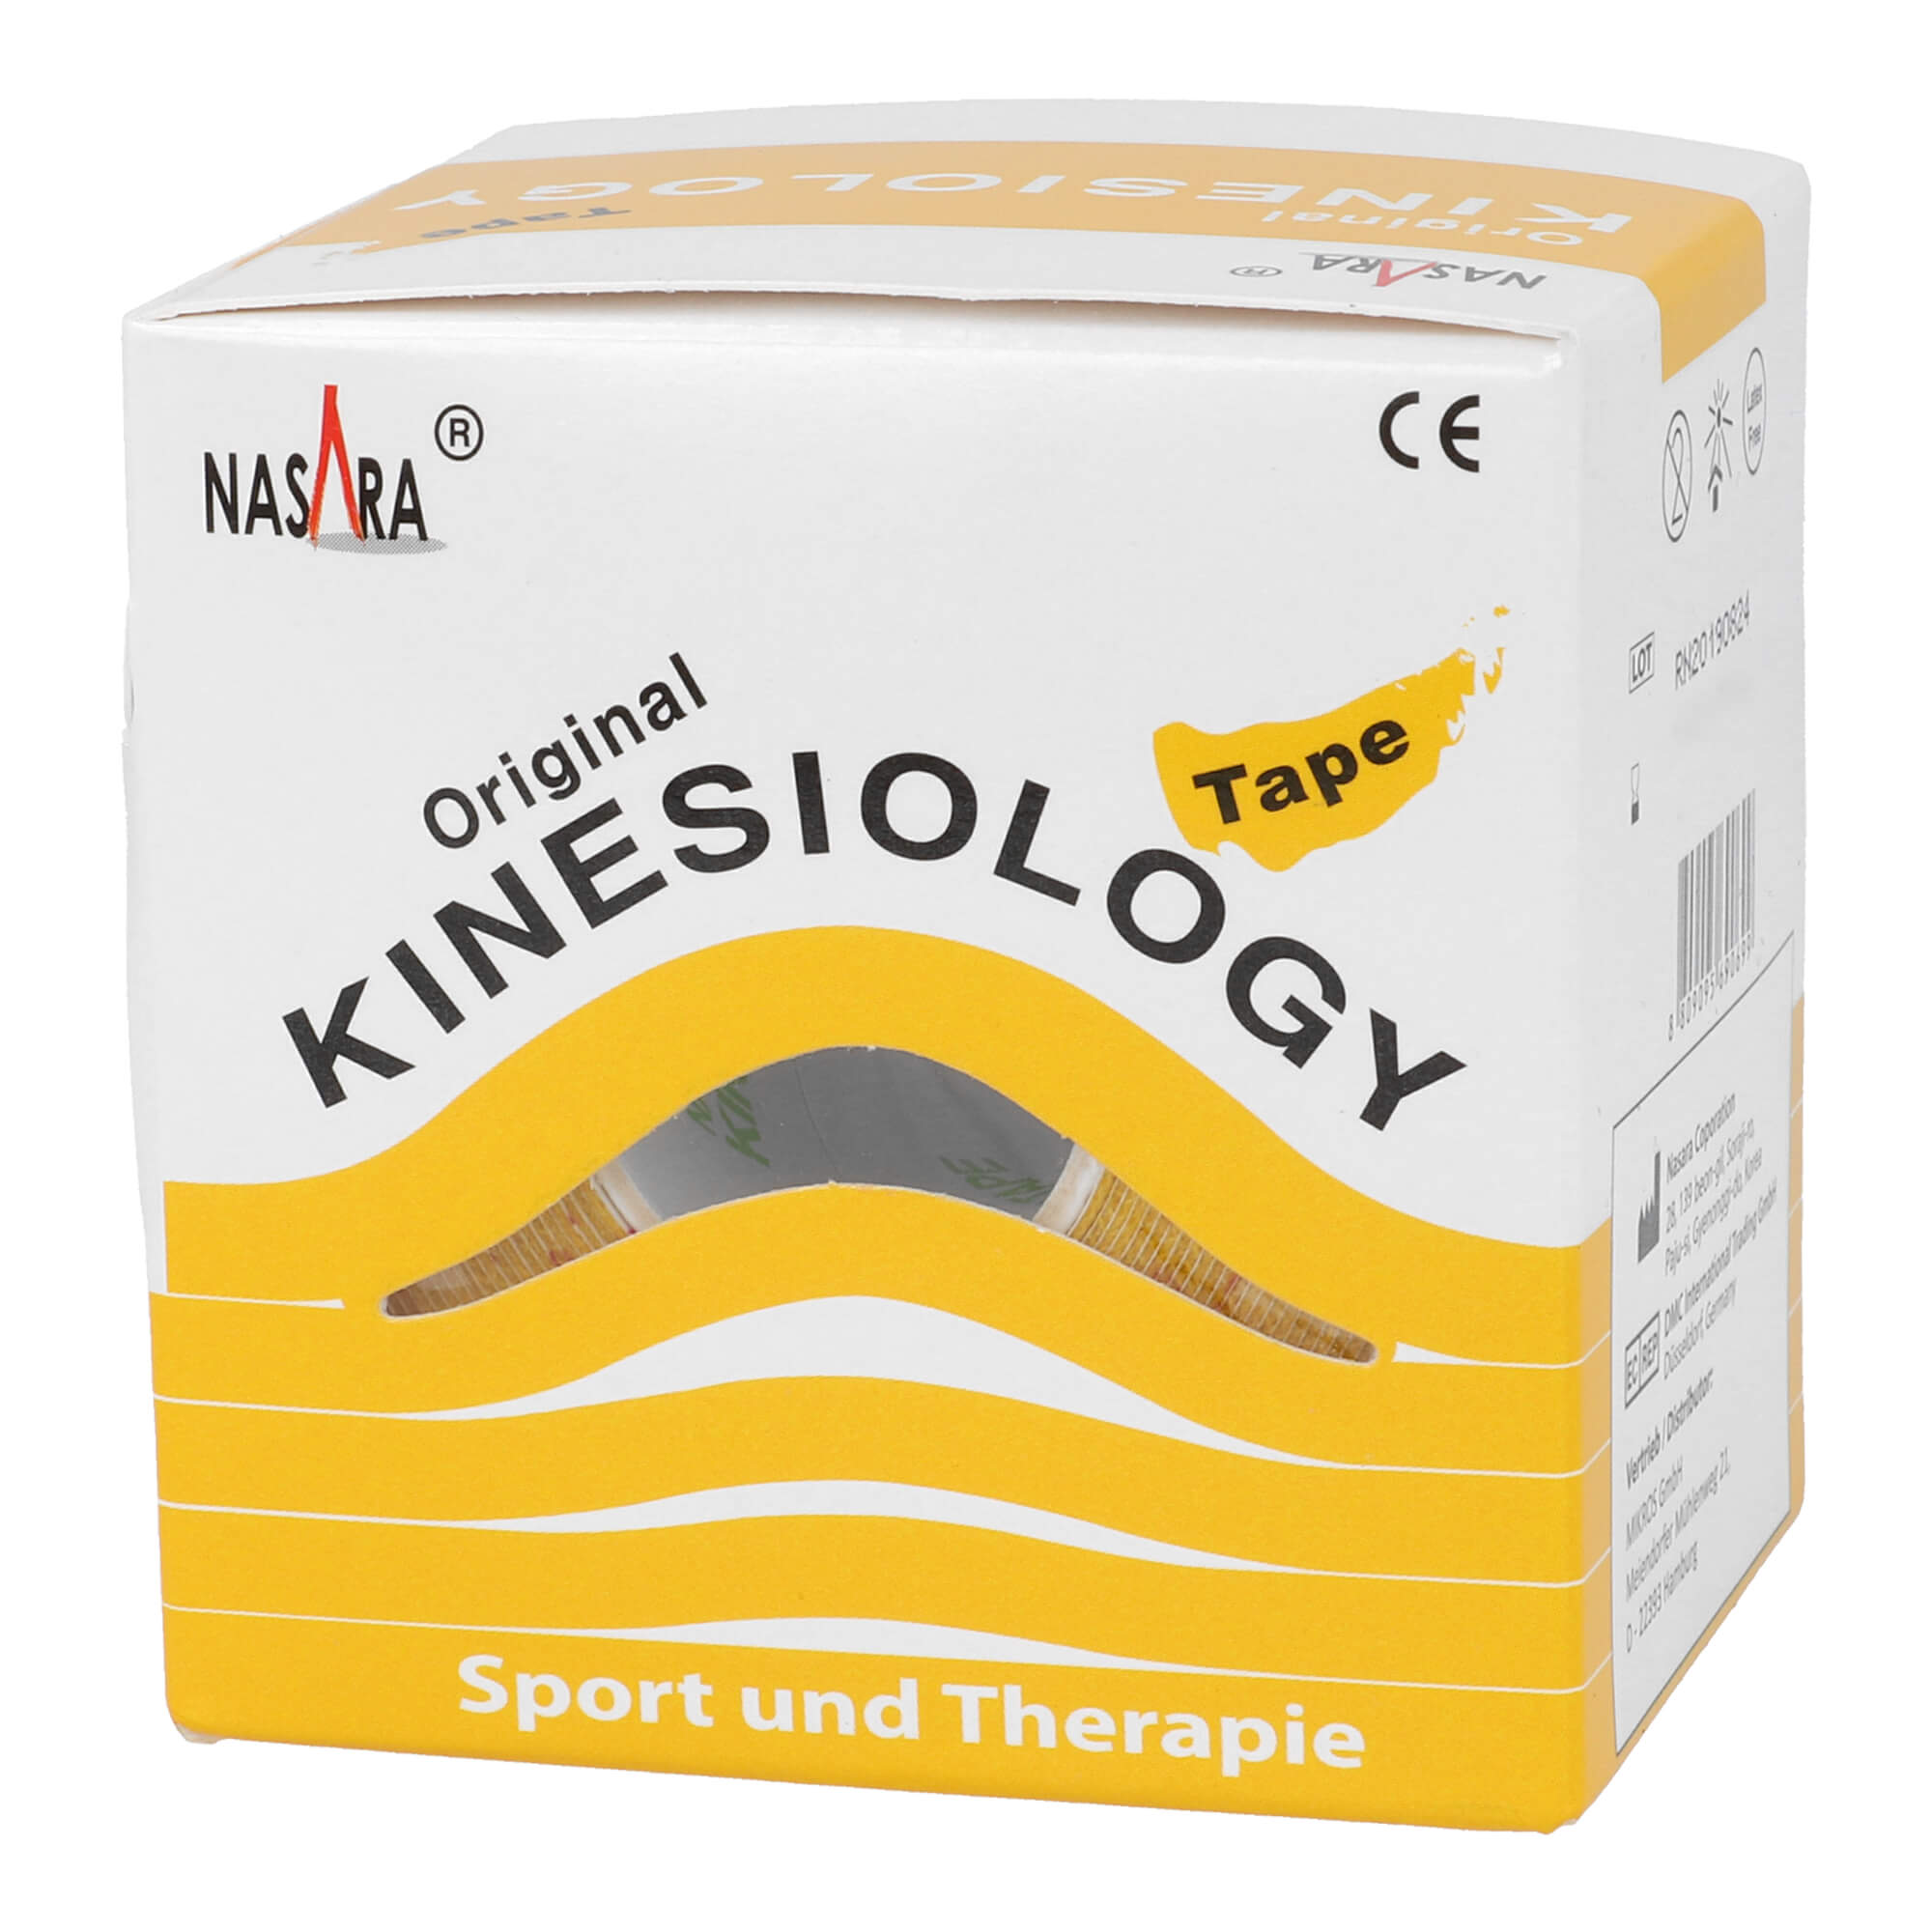 Kinesiology Tape für Sport und Therapie. Farbe: gelb.